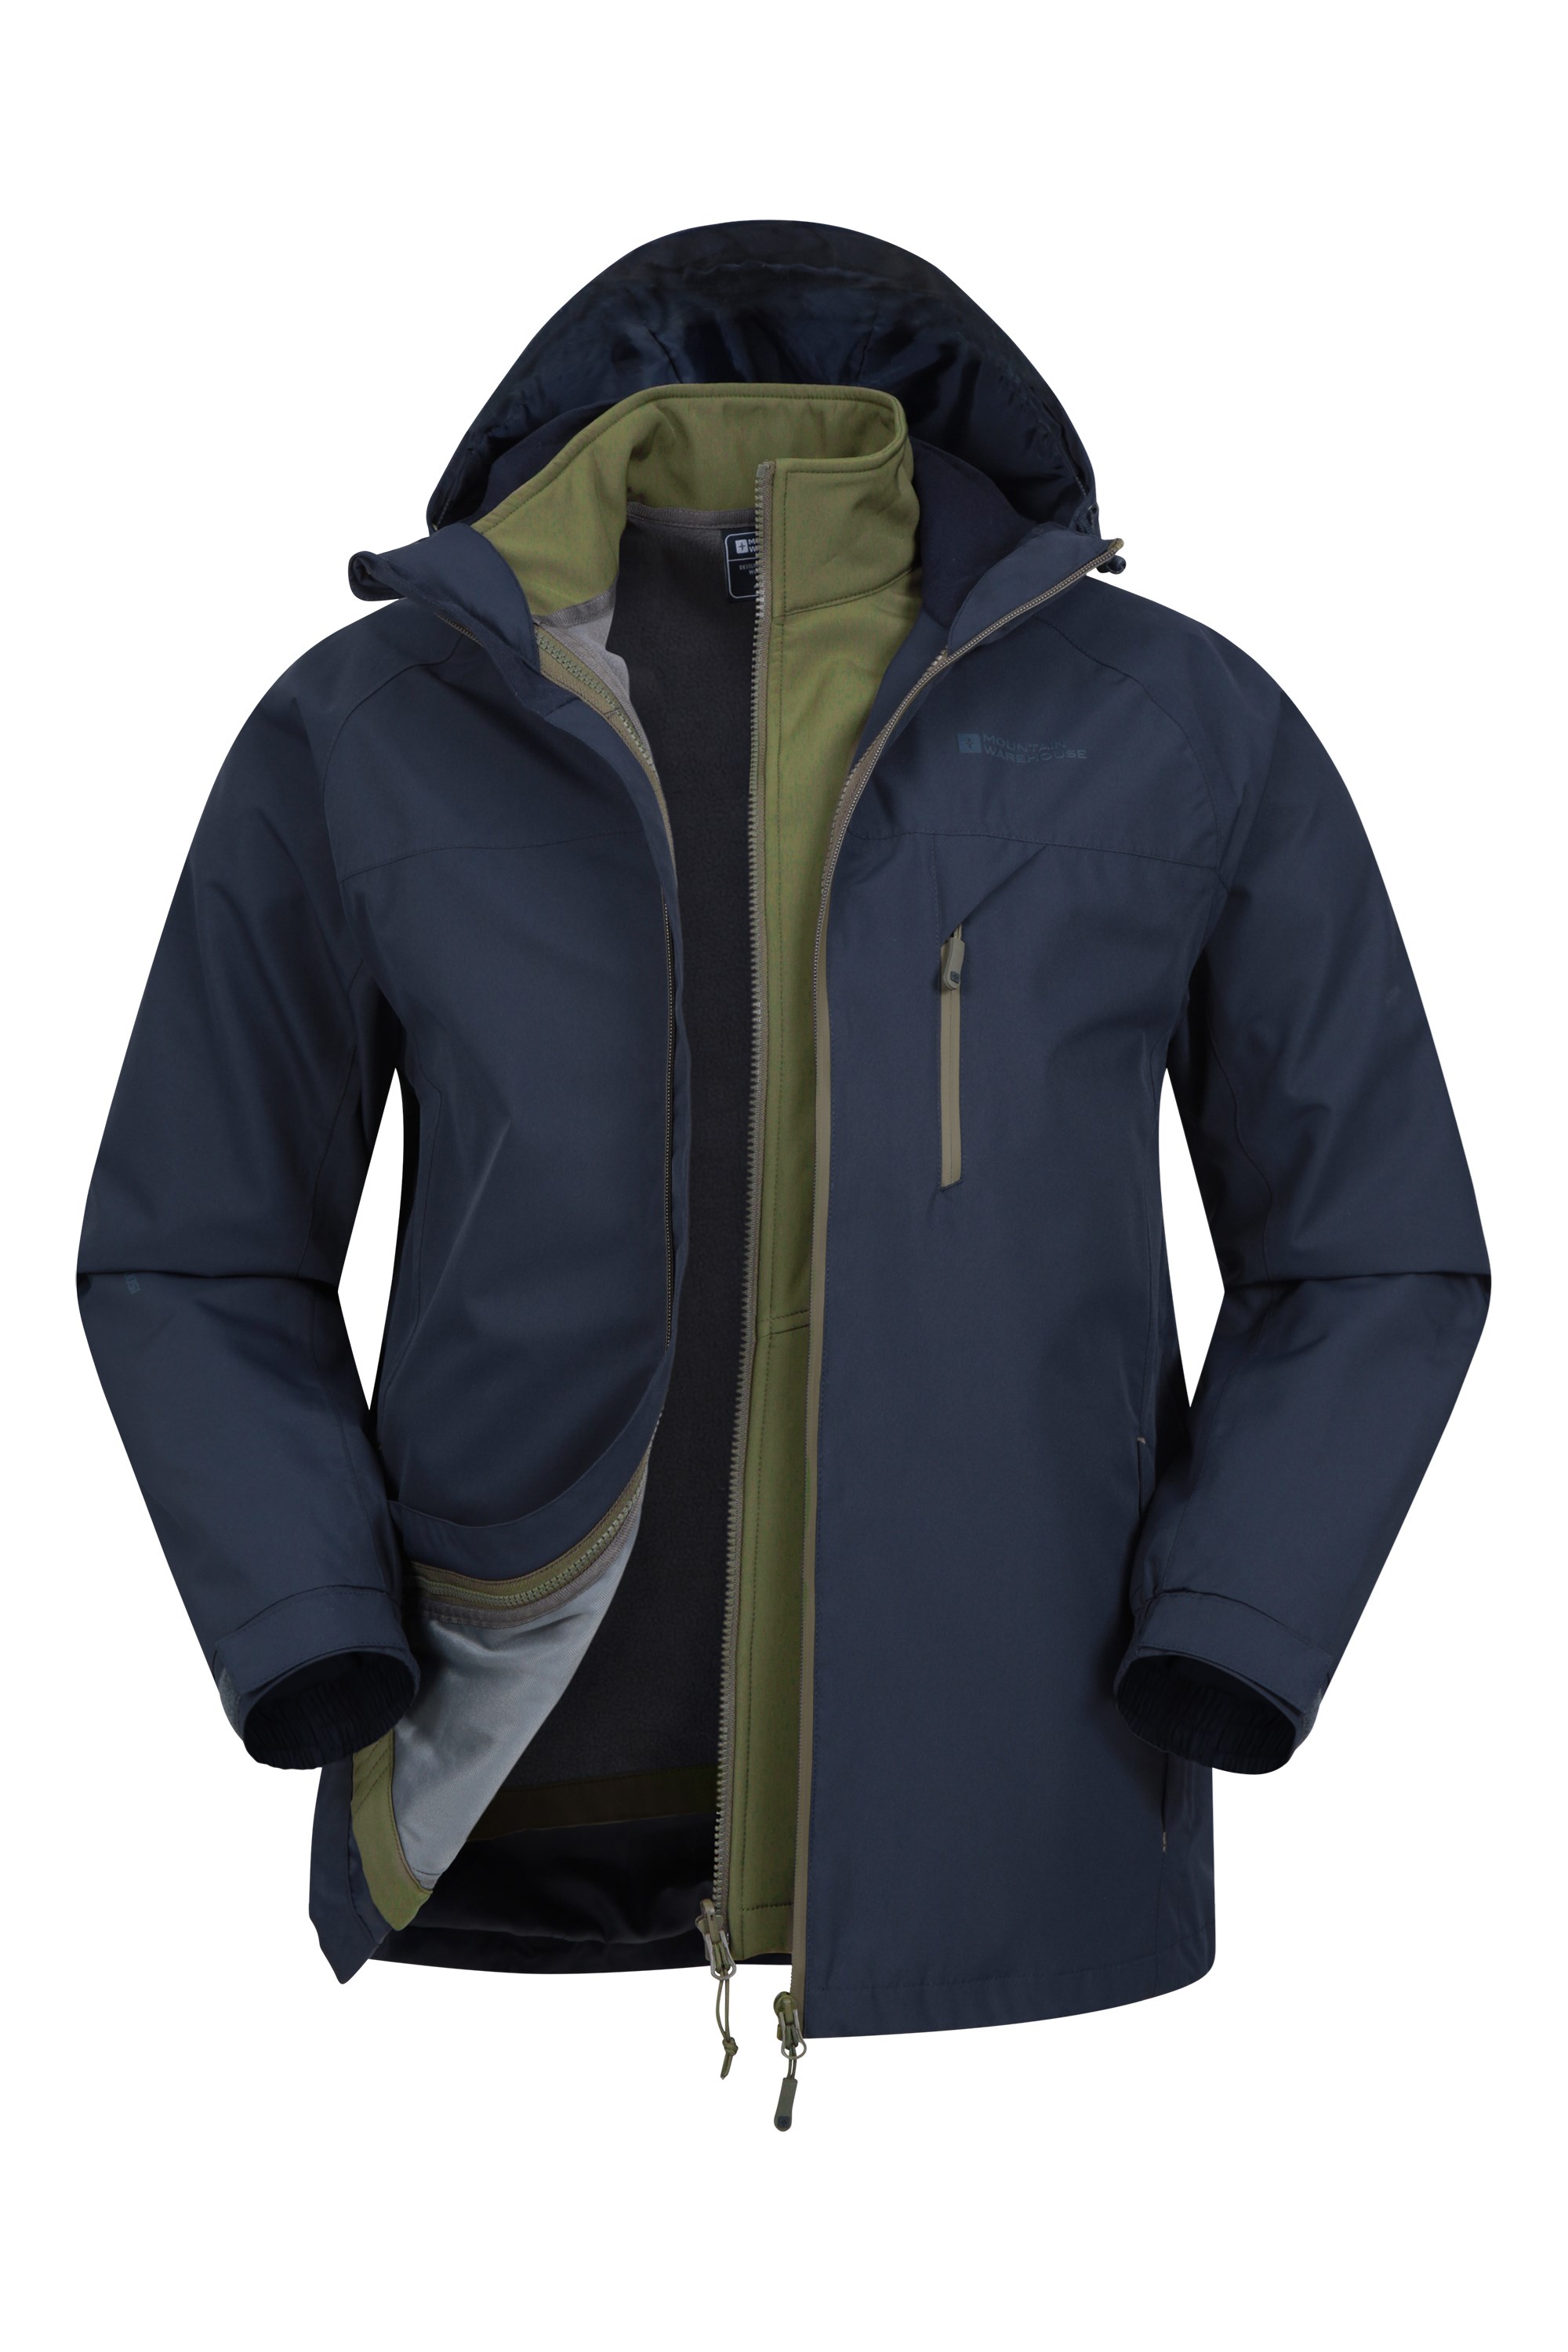 Brisk Extreme Mens 3-in-1 Waterproof Jacket